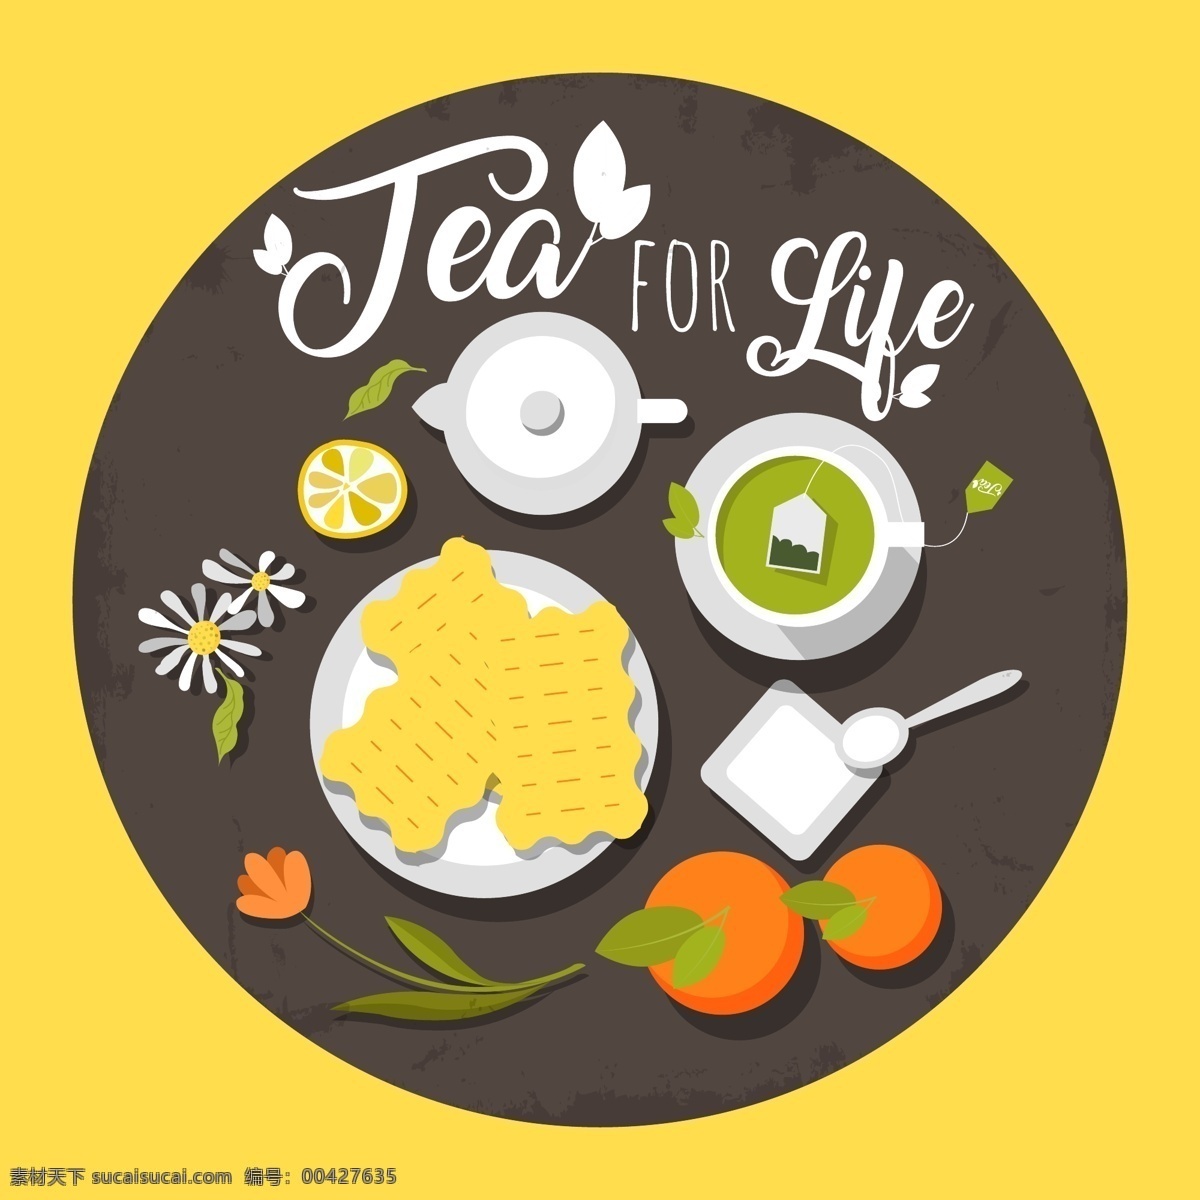 创意 绿茶 饼干 俯视图 花卉 柠檬 苏打饼干 柿子 茶壶 生活用品 生活百科 餐饮美食